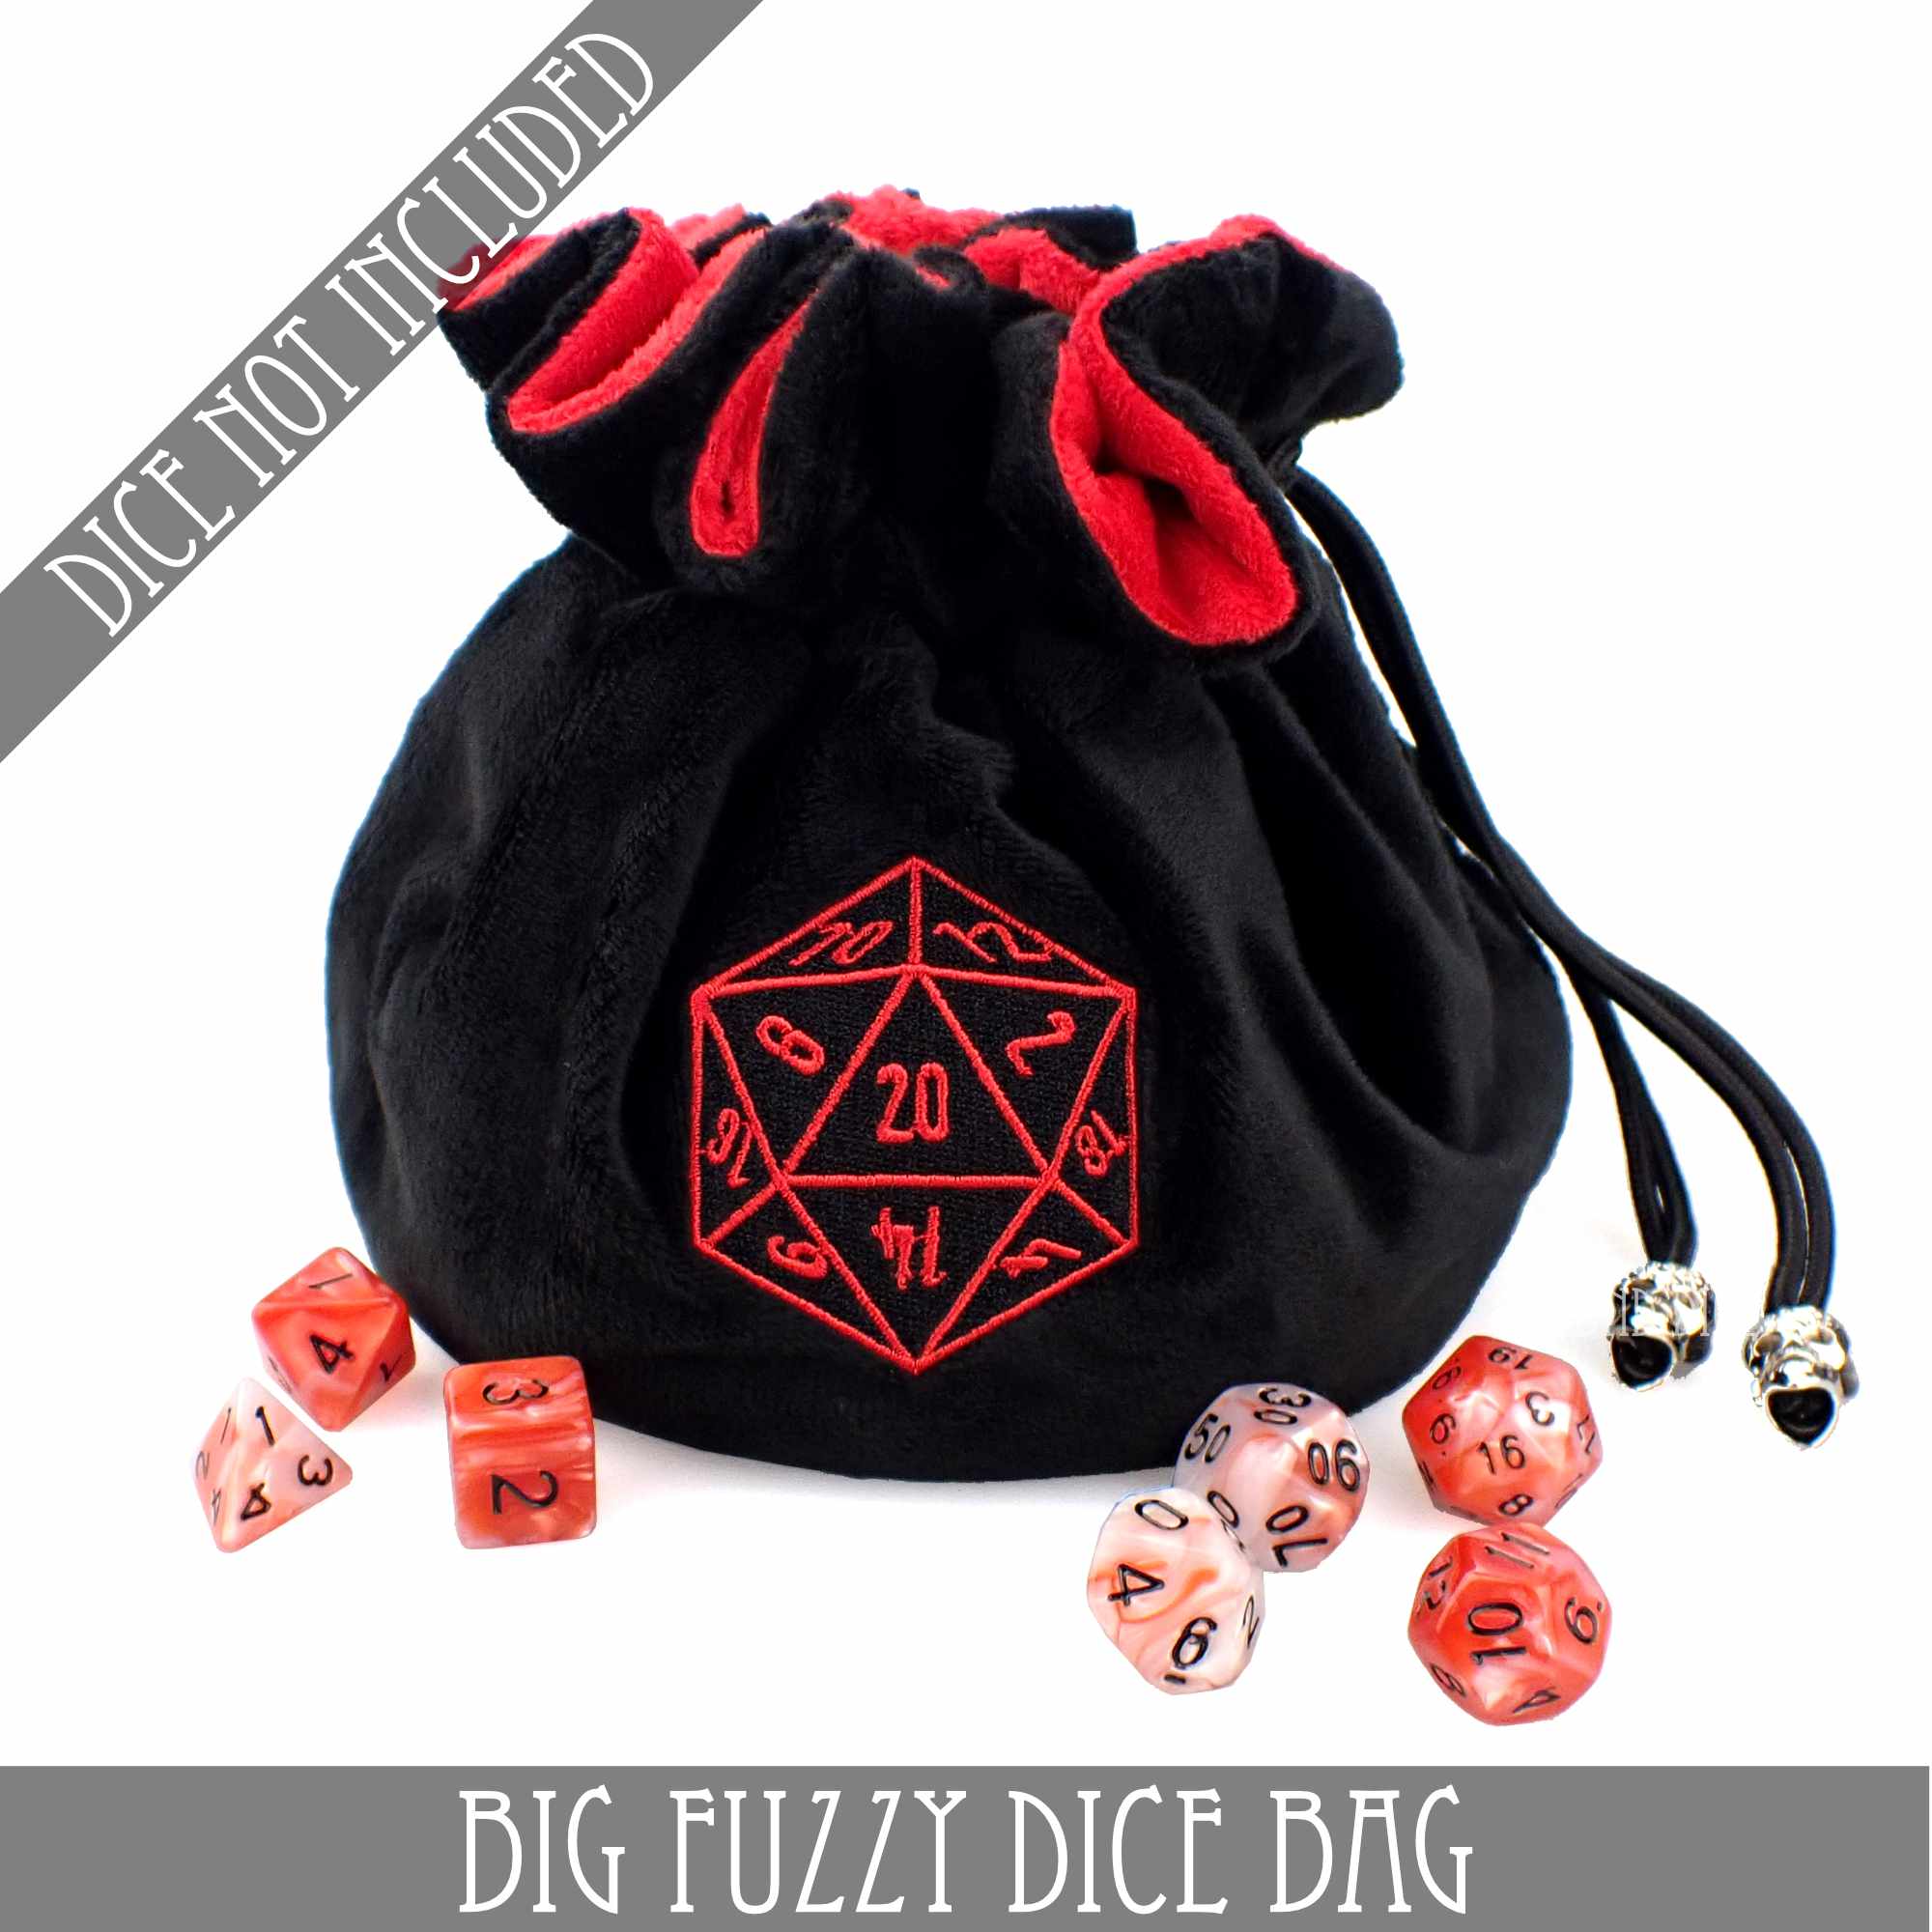 Big Fuzzy Dice Bag - 6 Colors